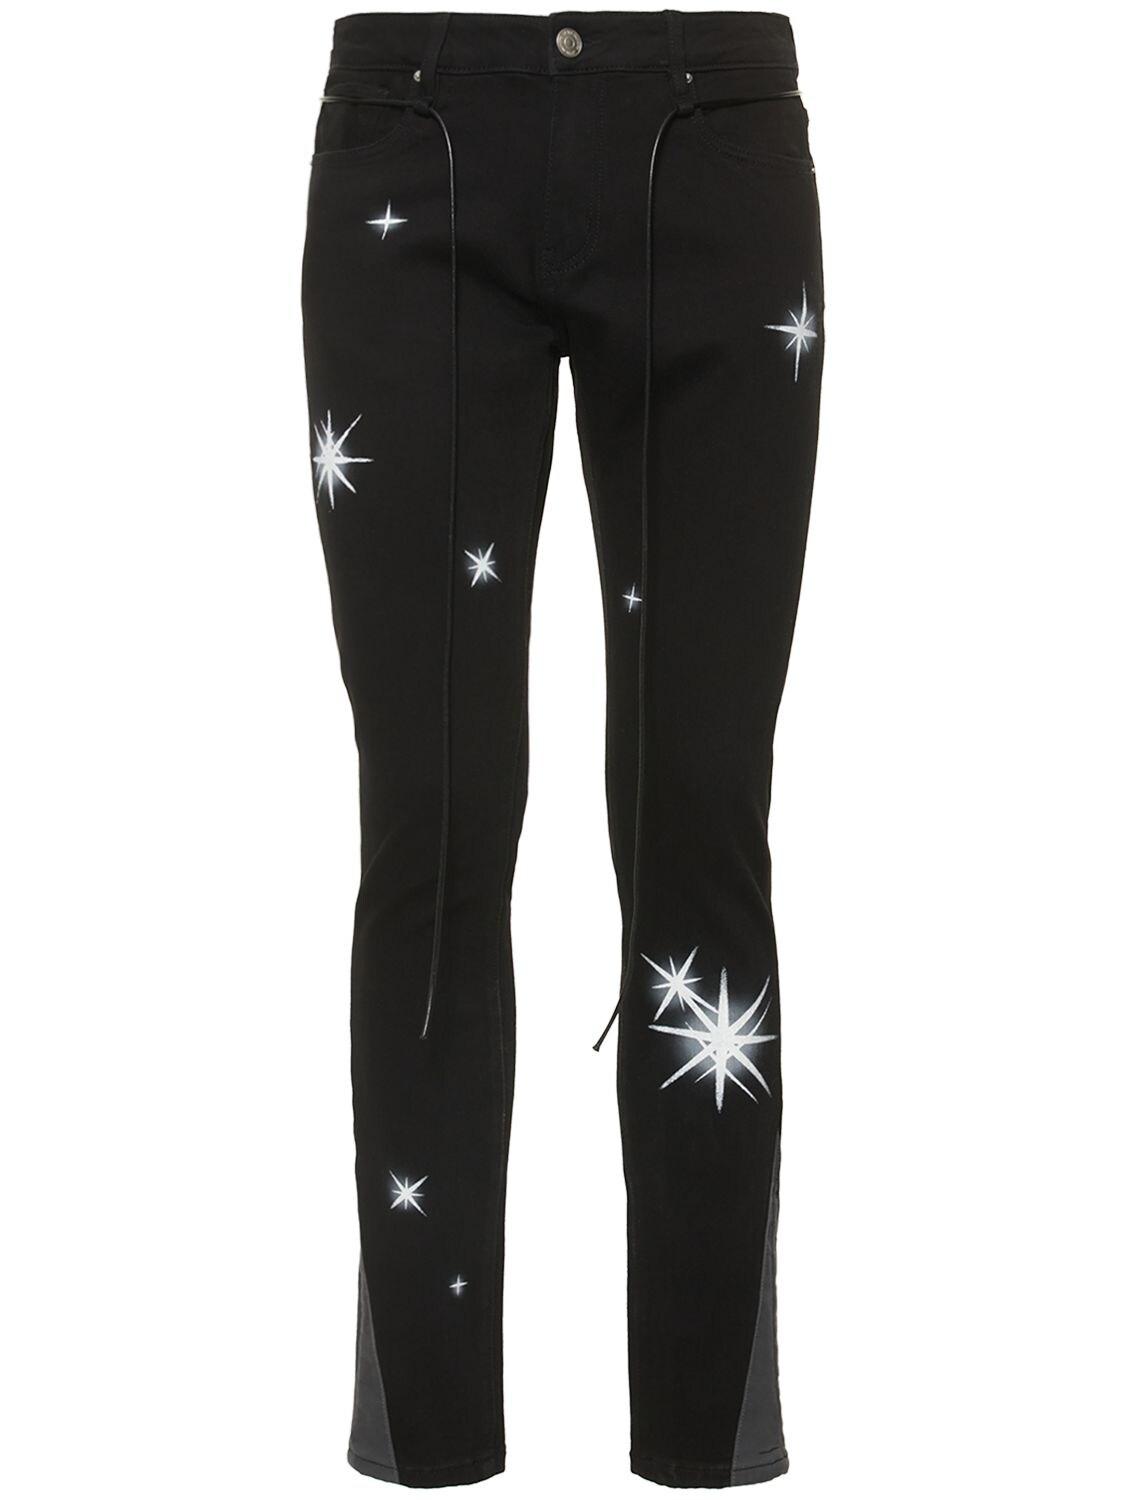 Lifted Anchors Baumwolle Jeans Aus Baumwollmischdenim astro Glare in Schwarz für Herren Herren Bekleidung Jeans Jeans mit Gerader Passform 